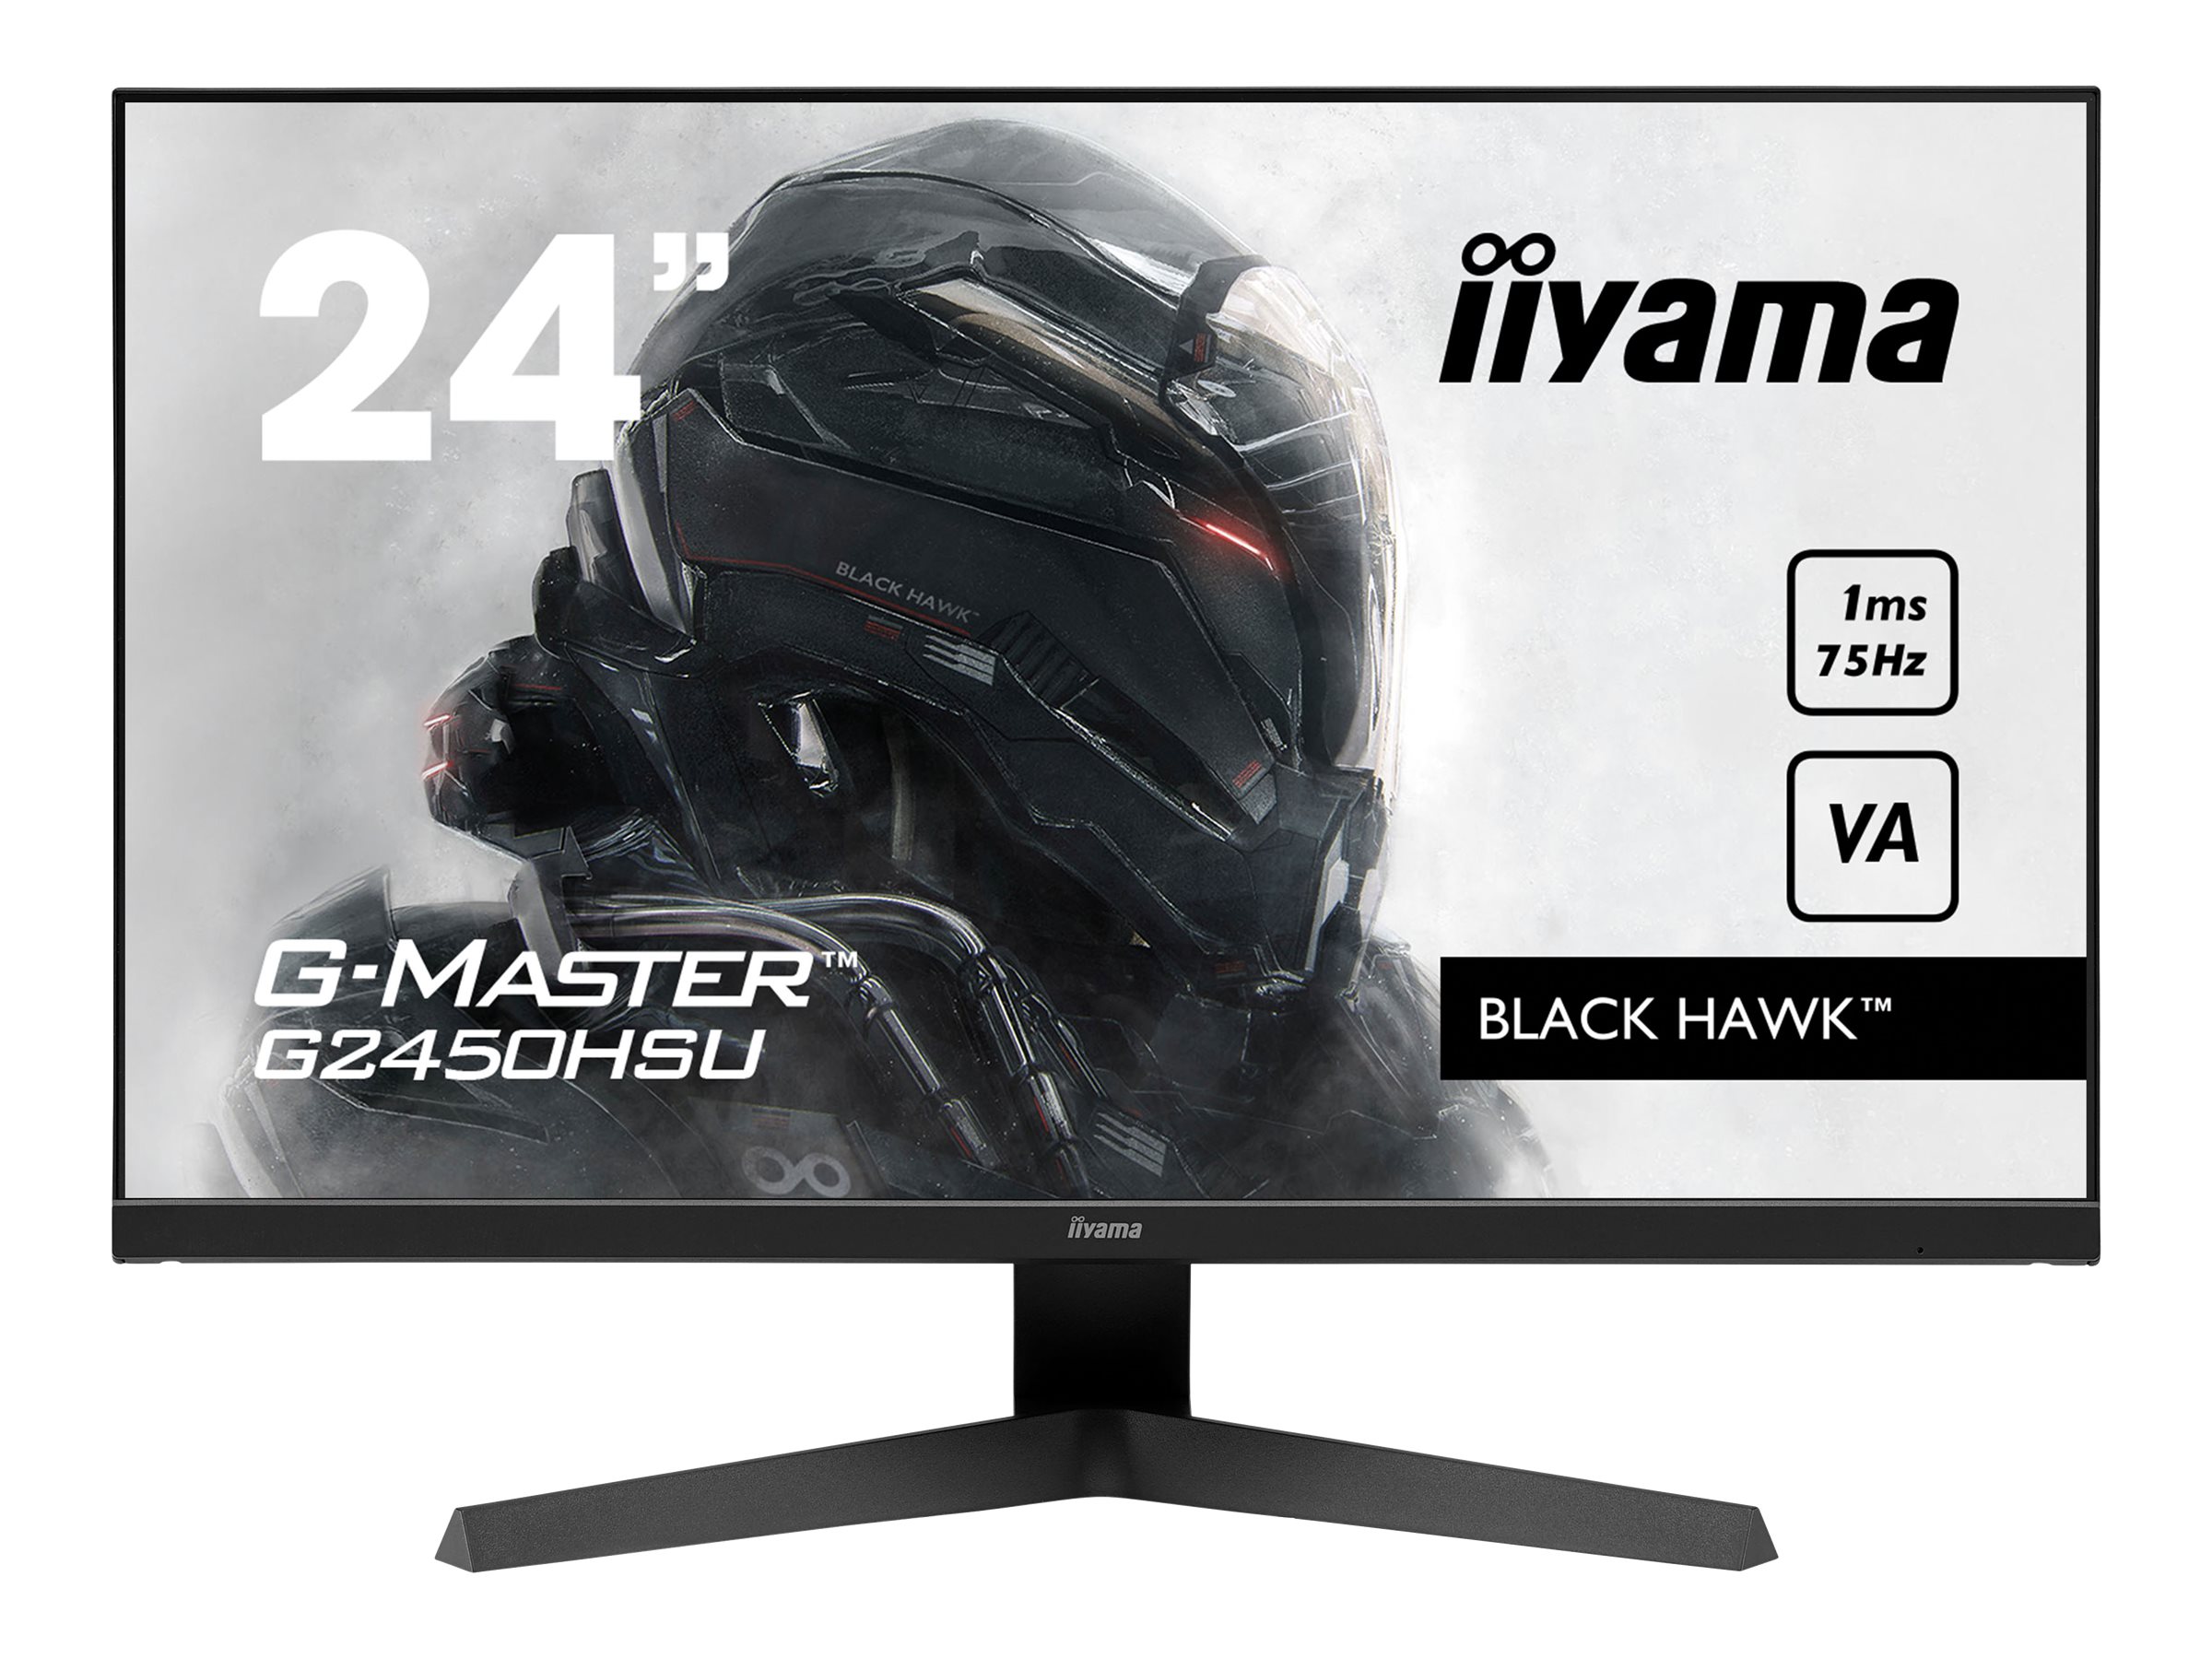 iiyama G-MASTER Black Hawk G2450HSU-B1 - LED-Monitor - 61 cm (24") (23.8" sichtbar) - 1920 x 1080 Full HD (1080p) @ 75 Hz - VA - 250 cd/m²